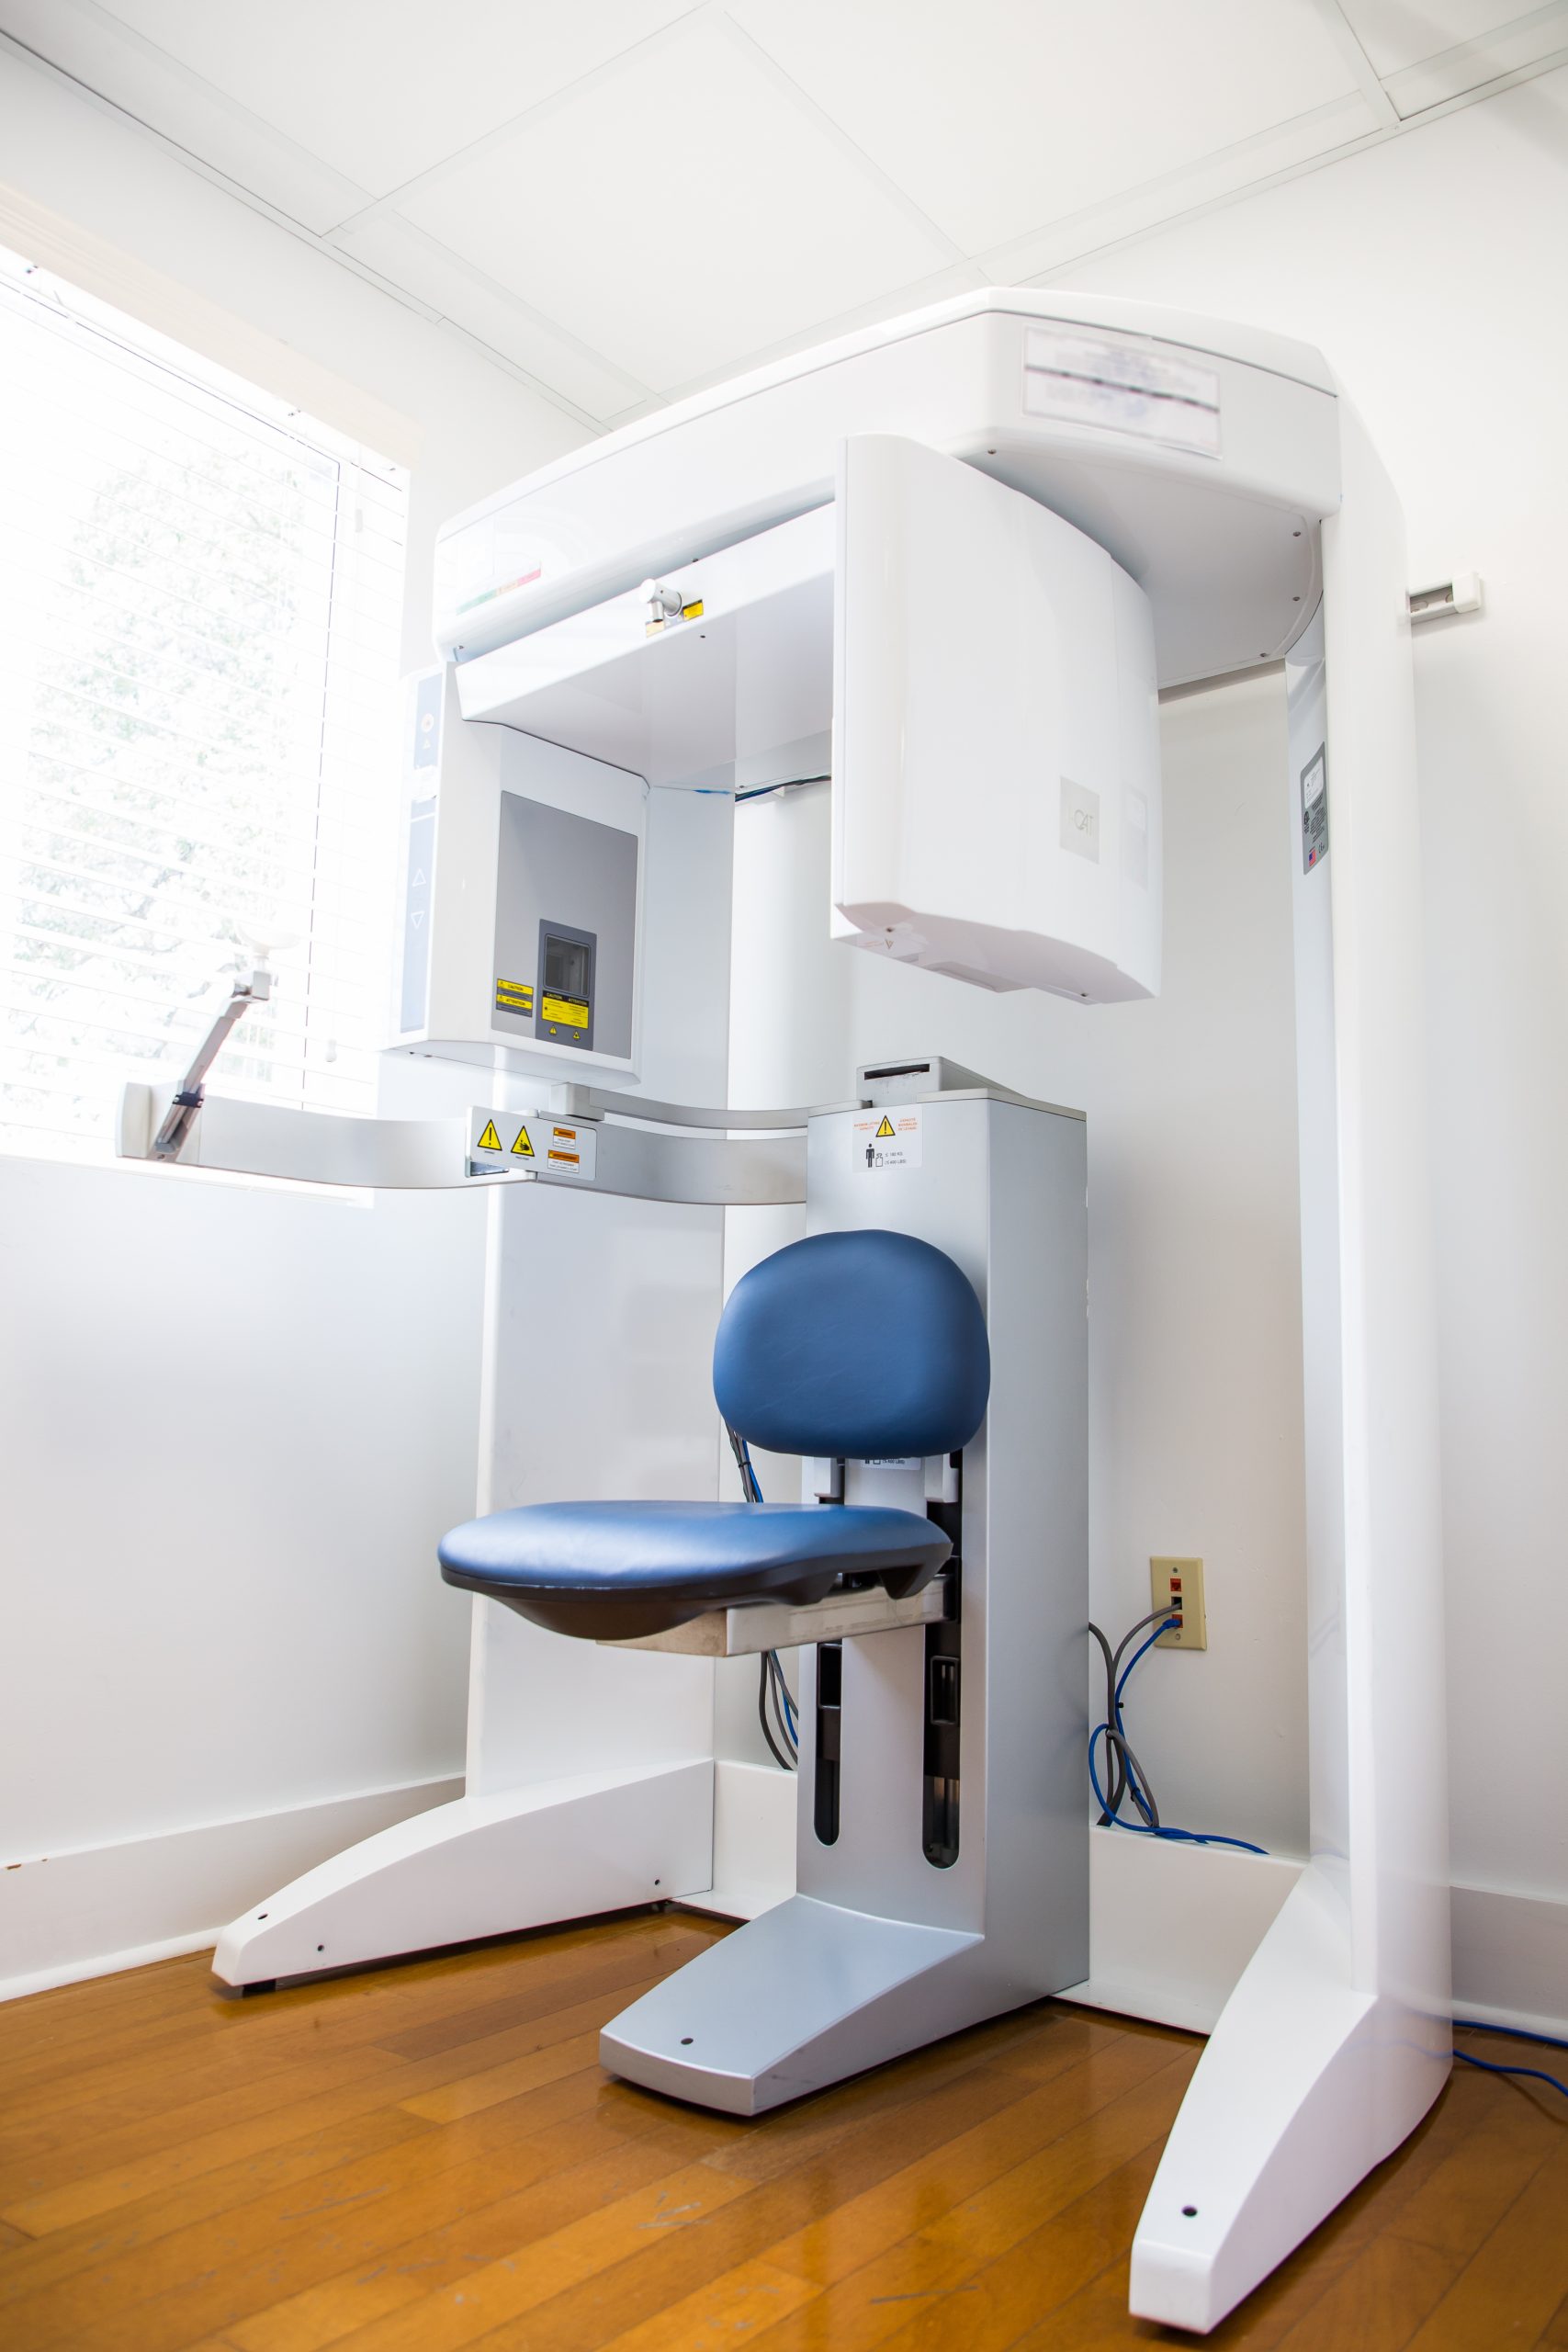 Cone Beam CT Scanner machine